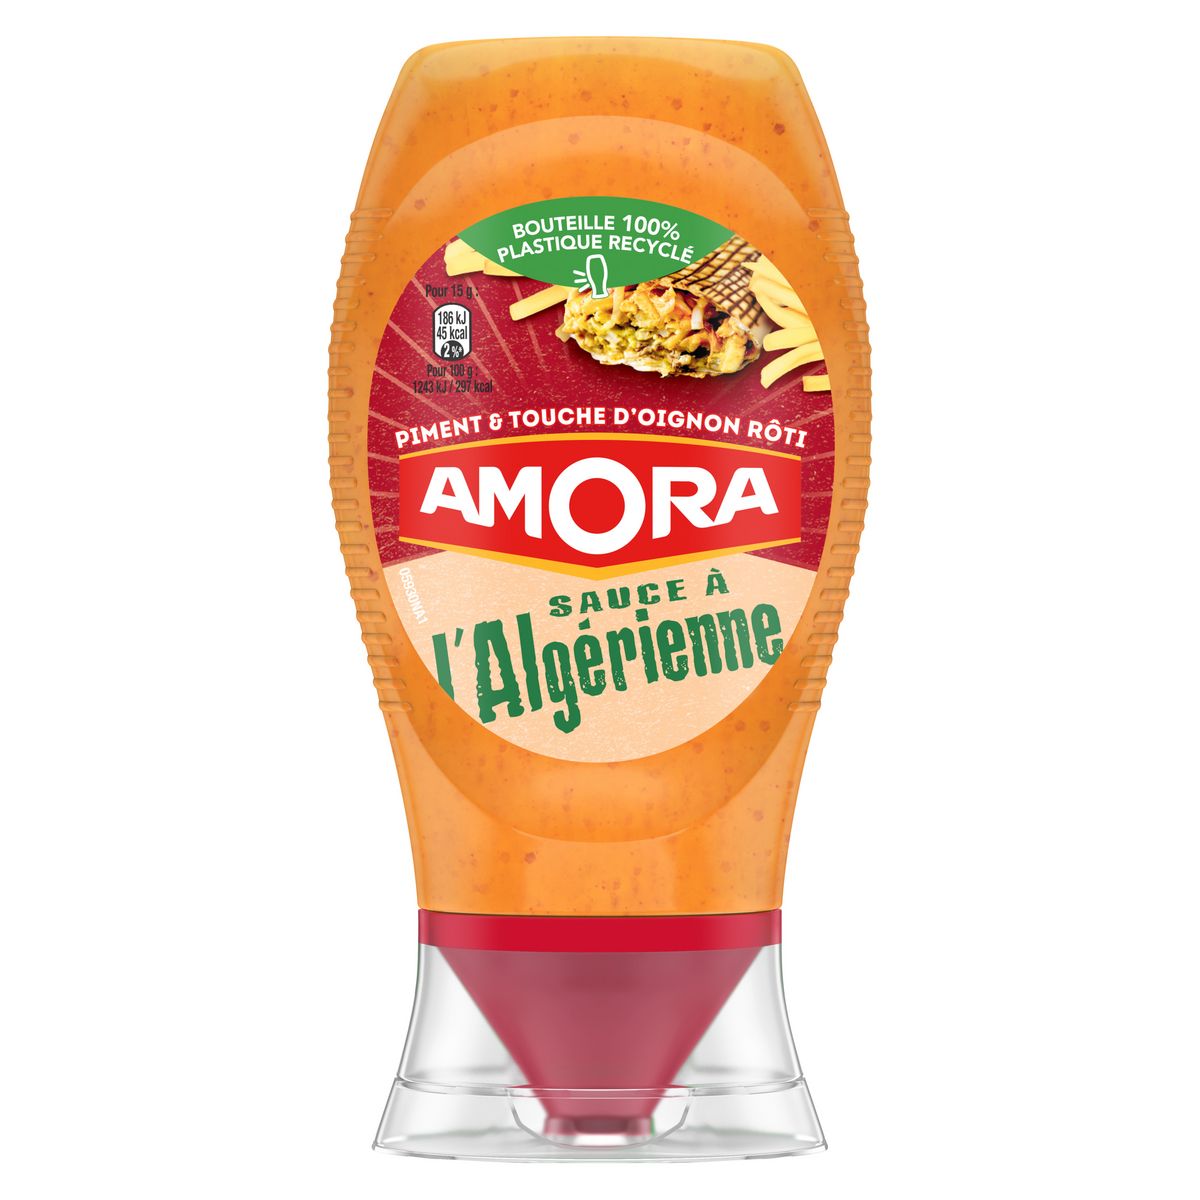 AMORA Sauce à l'Algérienne flacon souple 250g